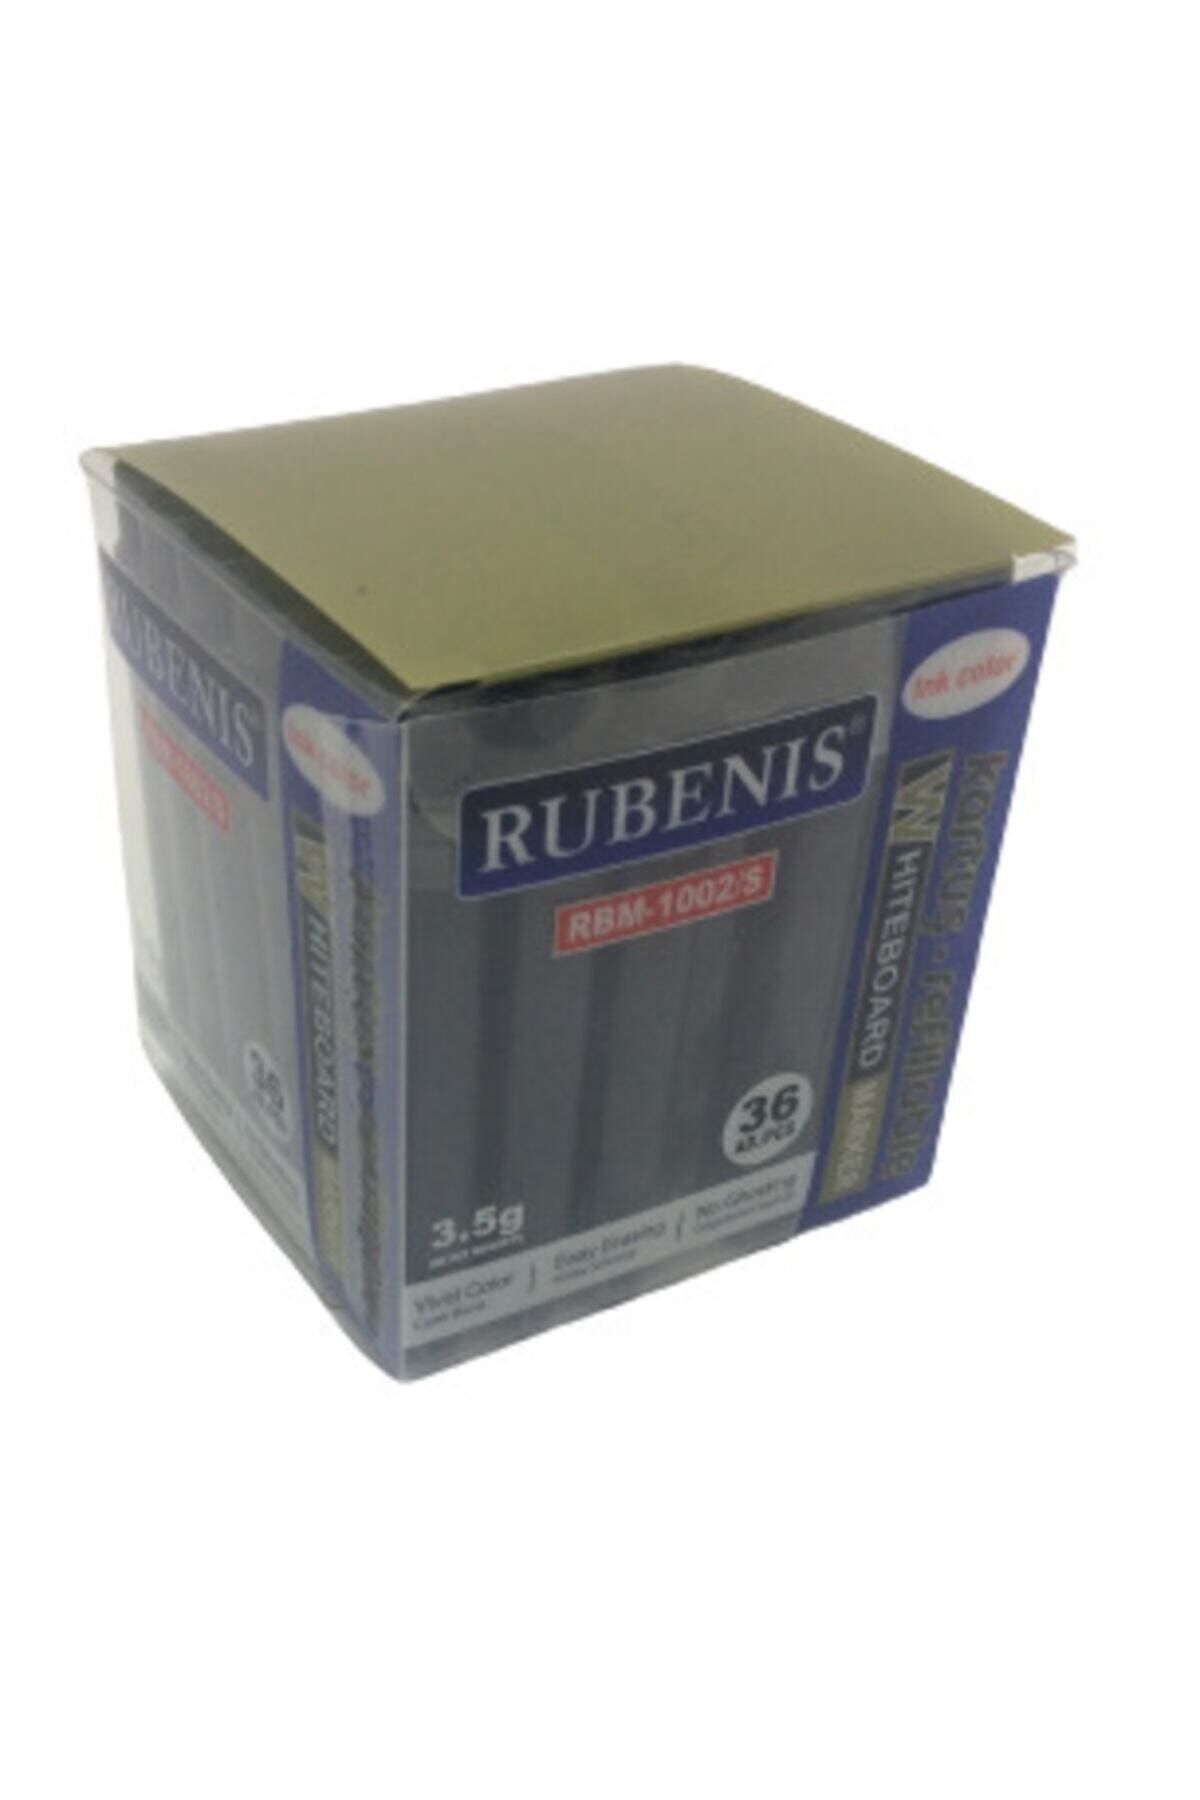 Rubenis 36 Adet Rbm-1002/s Beyaz Tahta Kalemi Siyah Kartuş